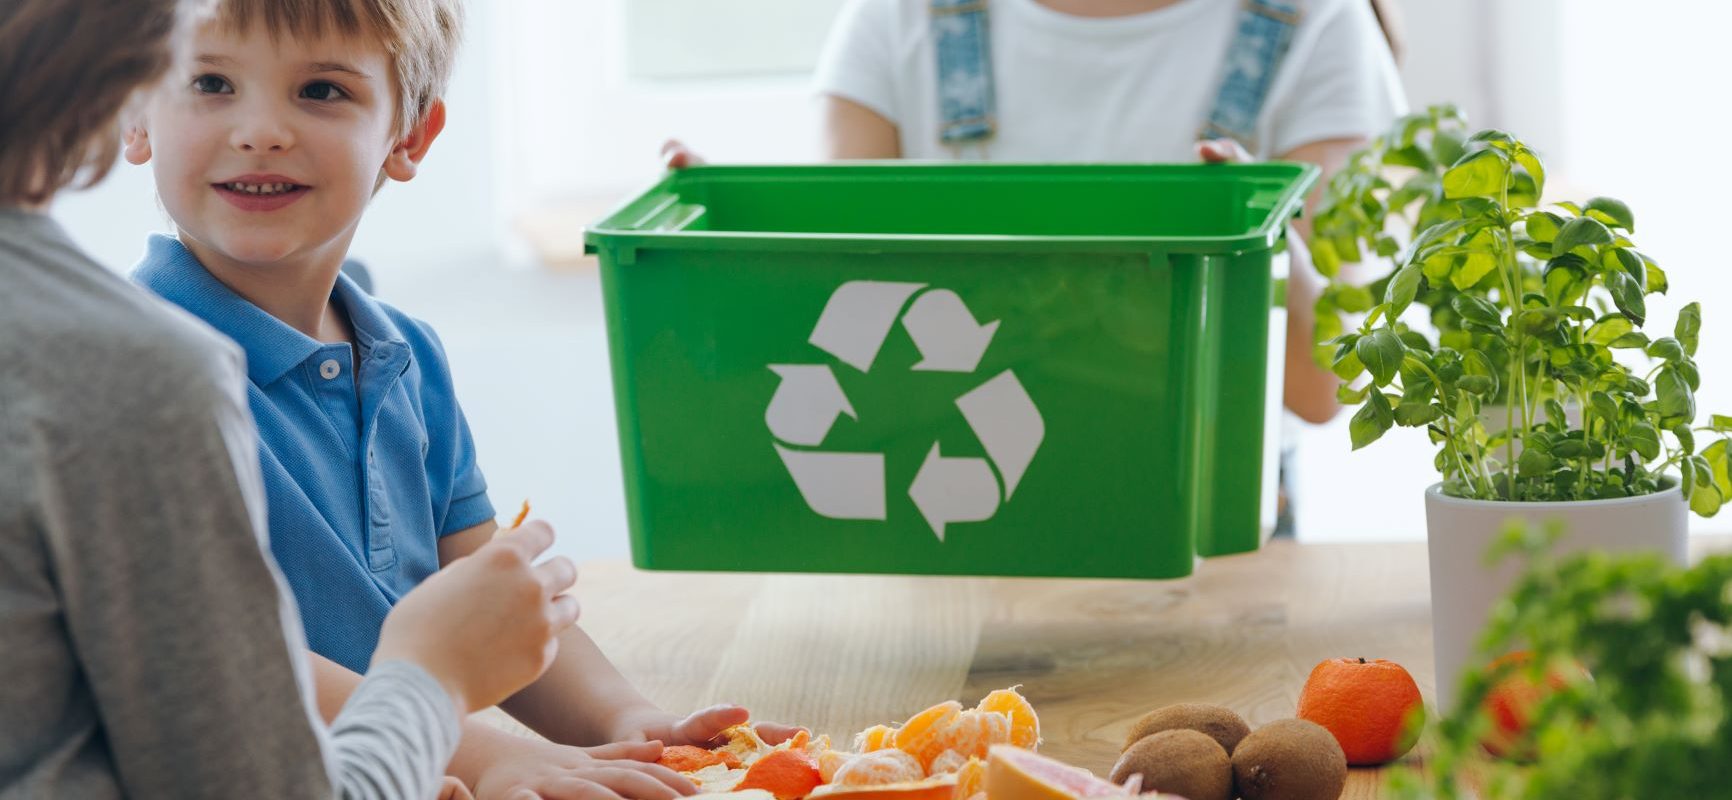 Po co i jak segregować śmieci? Na czym polega recykling i segregacja śmieci? Dzieci uczą się segregować śmieci.